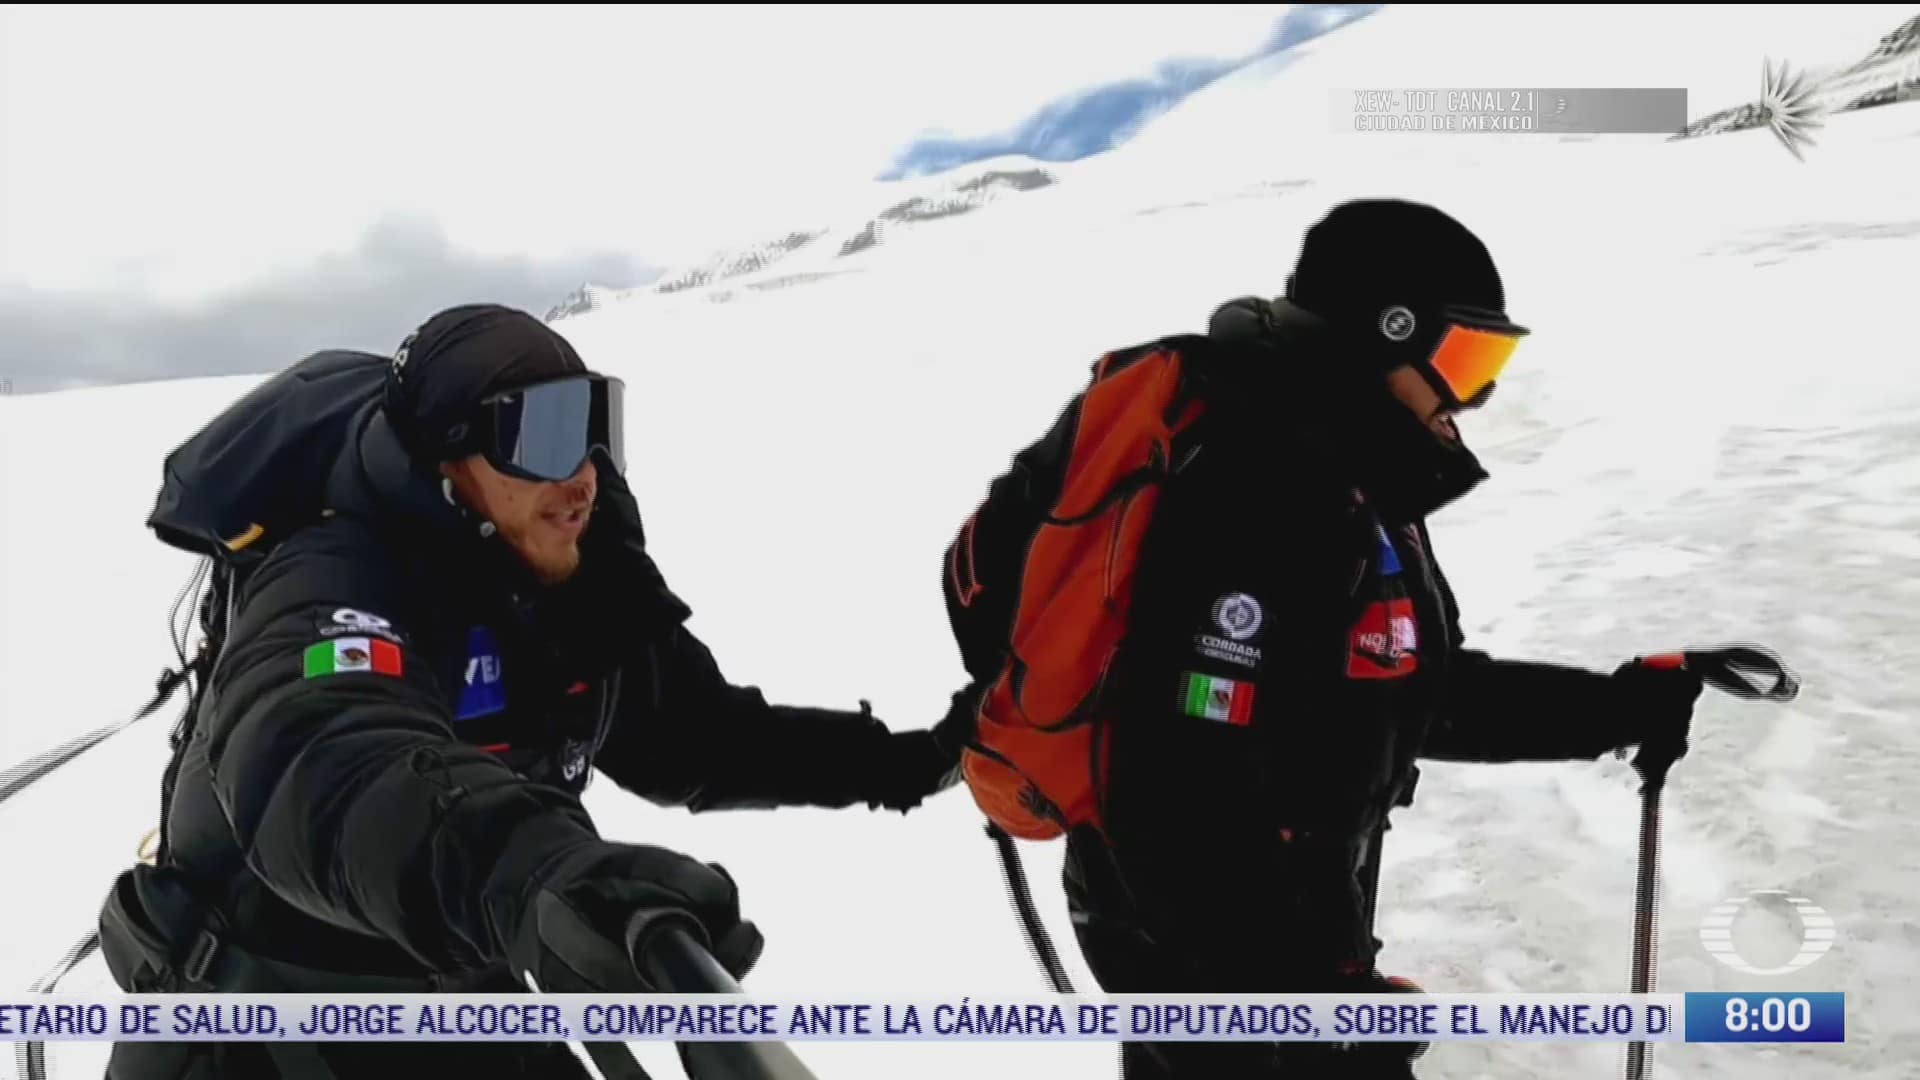 rafael jaramillo alpinista ciego y omar alvarez buscan escalar las montanas mas altas del mundo